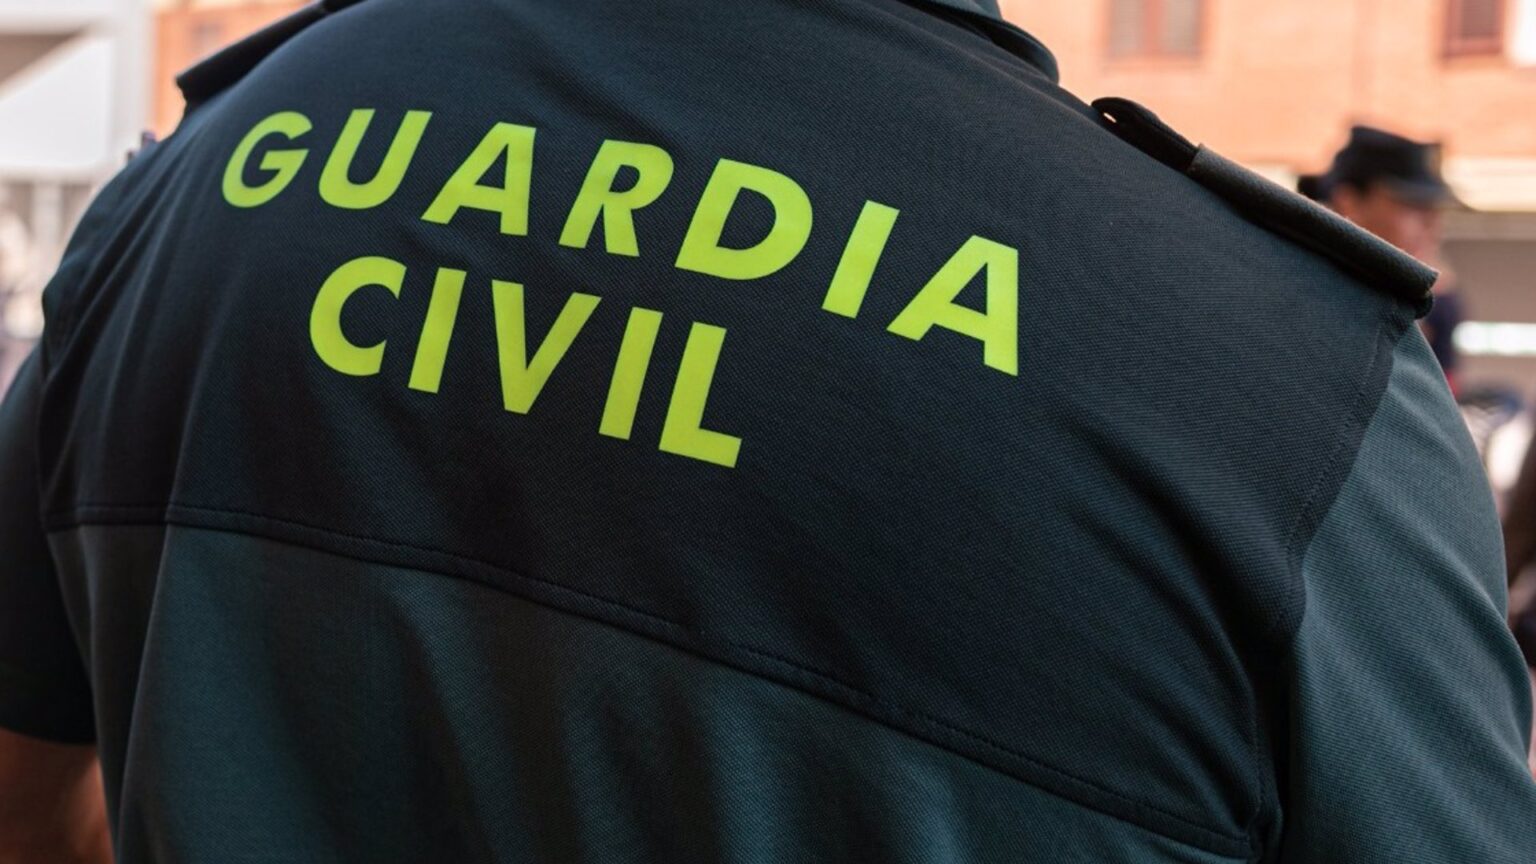 Detenida en La Coruña como presunta autora del asesinato de su marido en enero